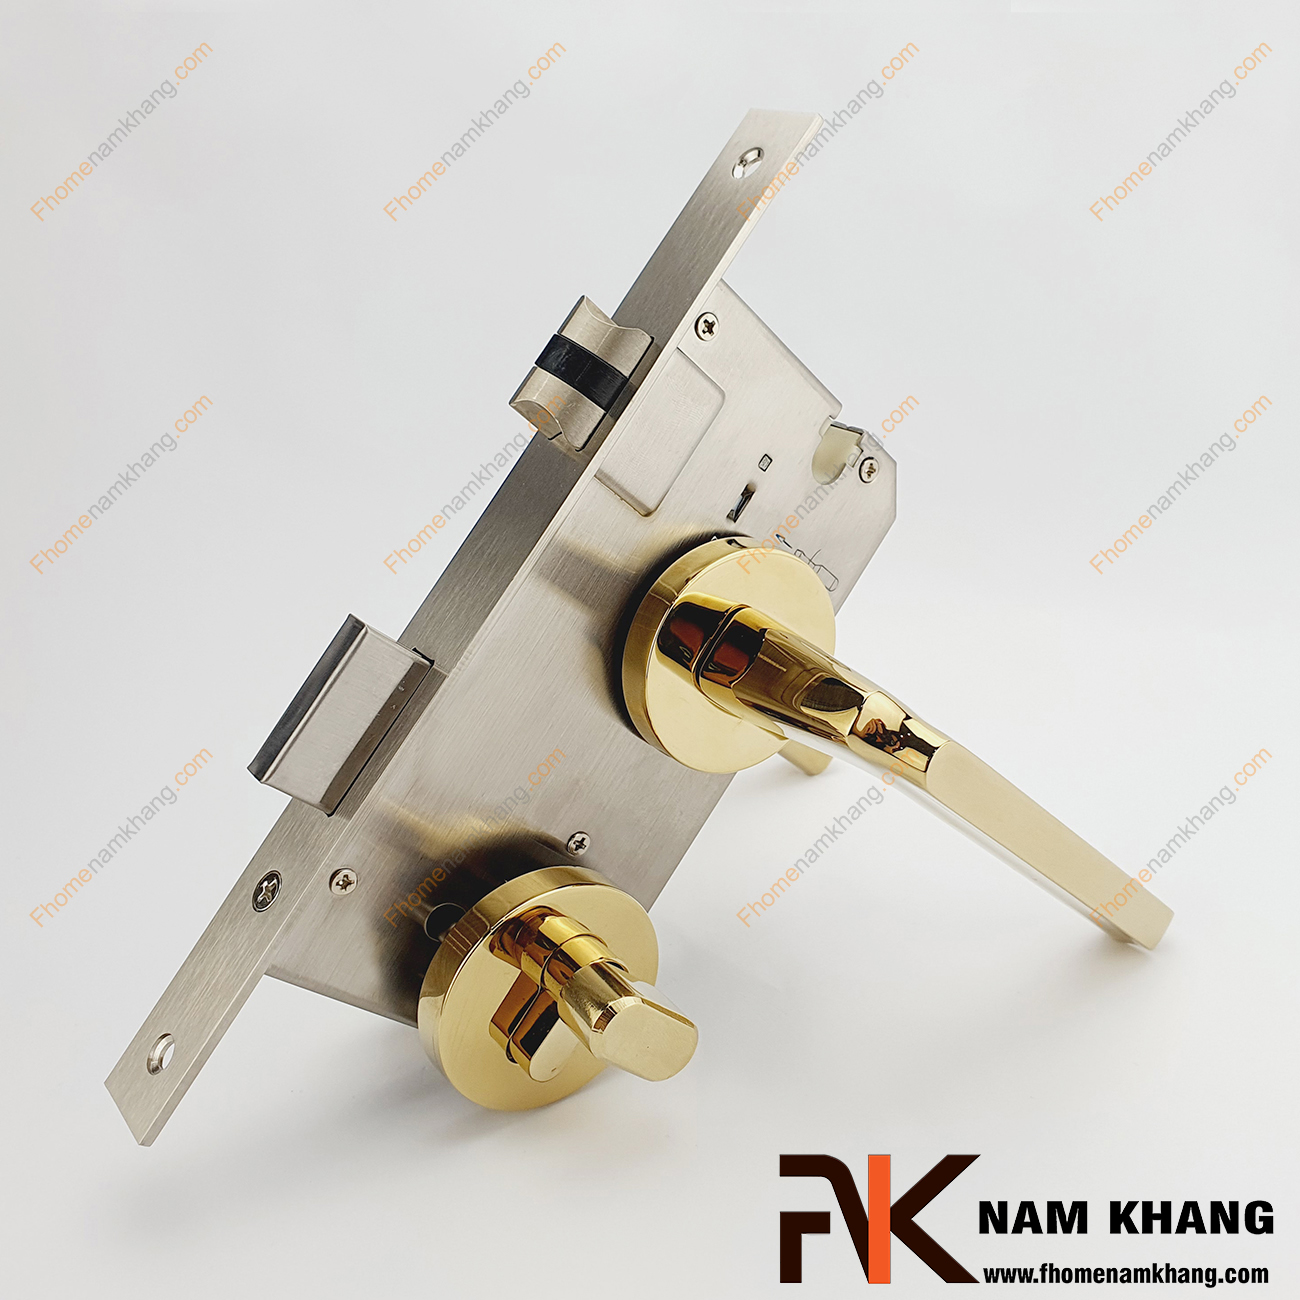 Khóa cửa phân thể bằng hợp kim cao cấp NK575-PVD có thiết kế phần ốp khóa và tay gạt riêng biệt, khá nhỏ gọn và tạo được sự nổi bật độc đáo của một dòng khóa cửa.